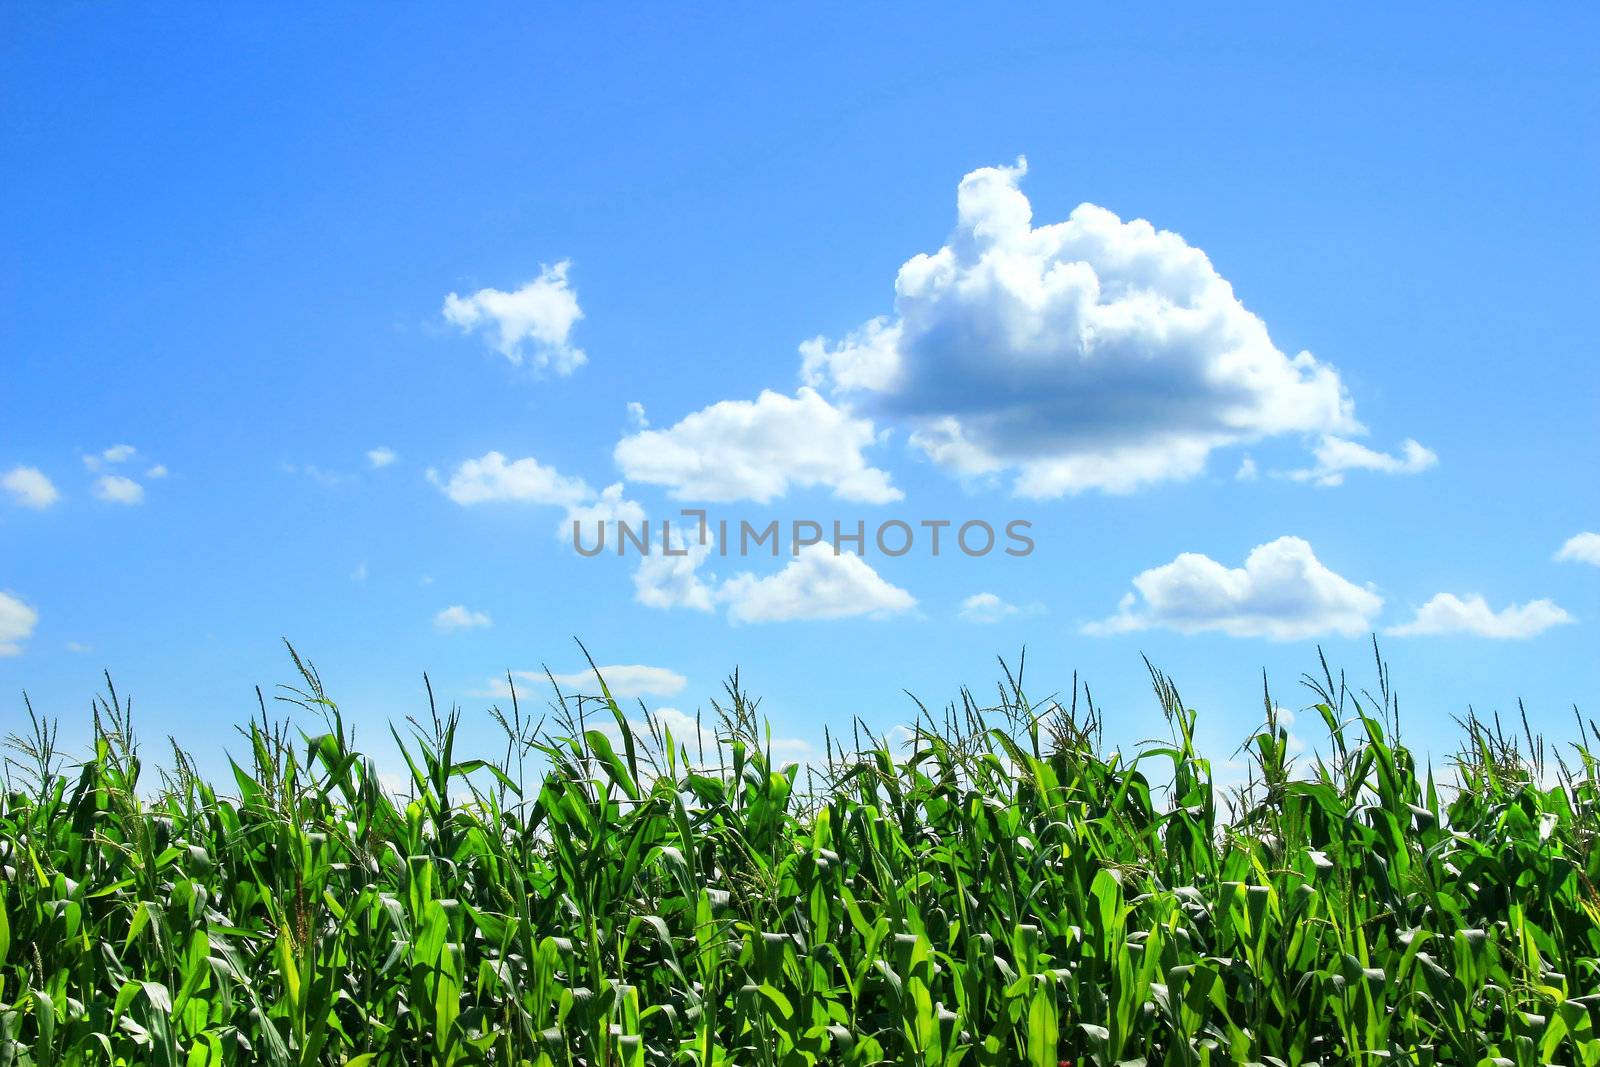 Field of corn stalks in August